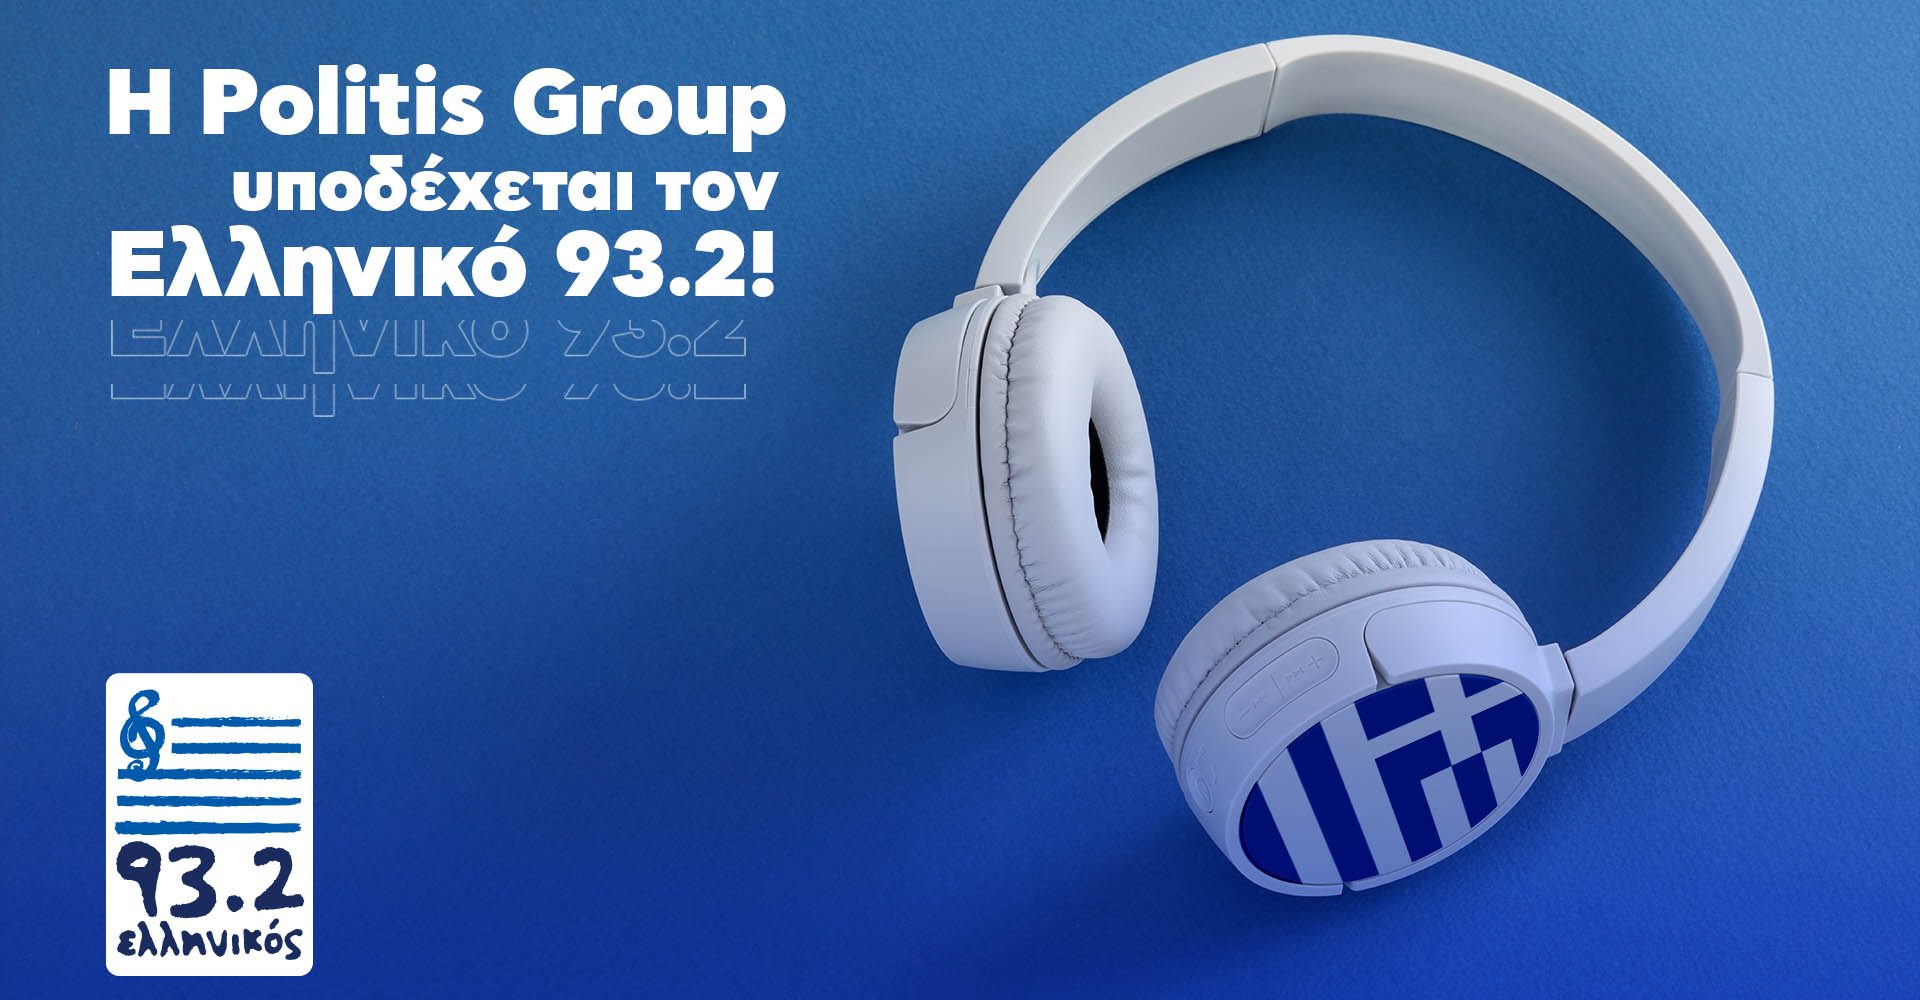 Η Politis Group υποδέχεται τον Ελληνικό 93.2